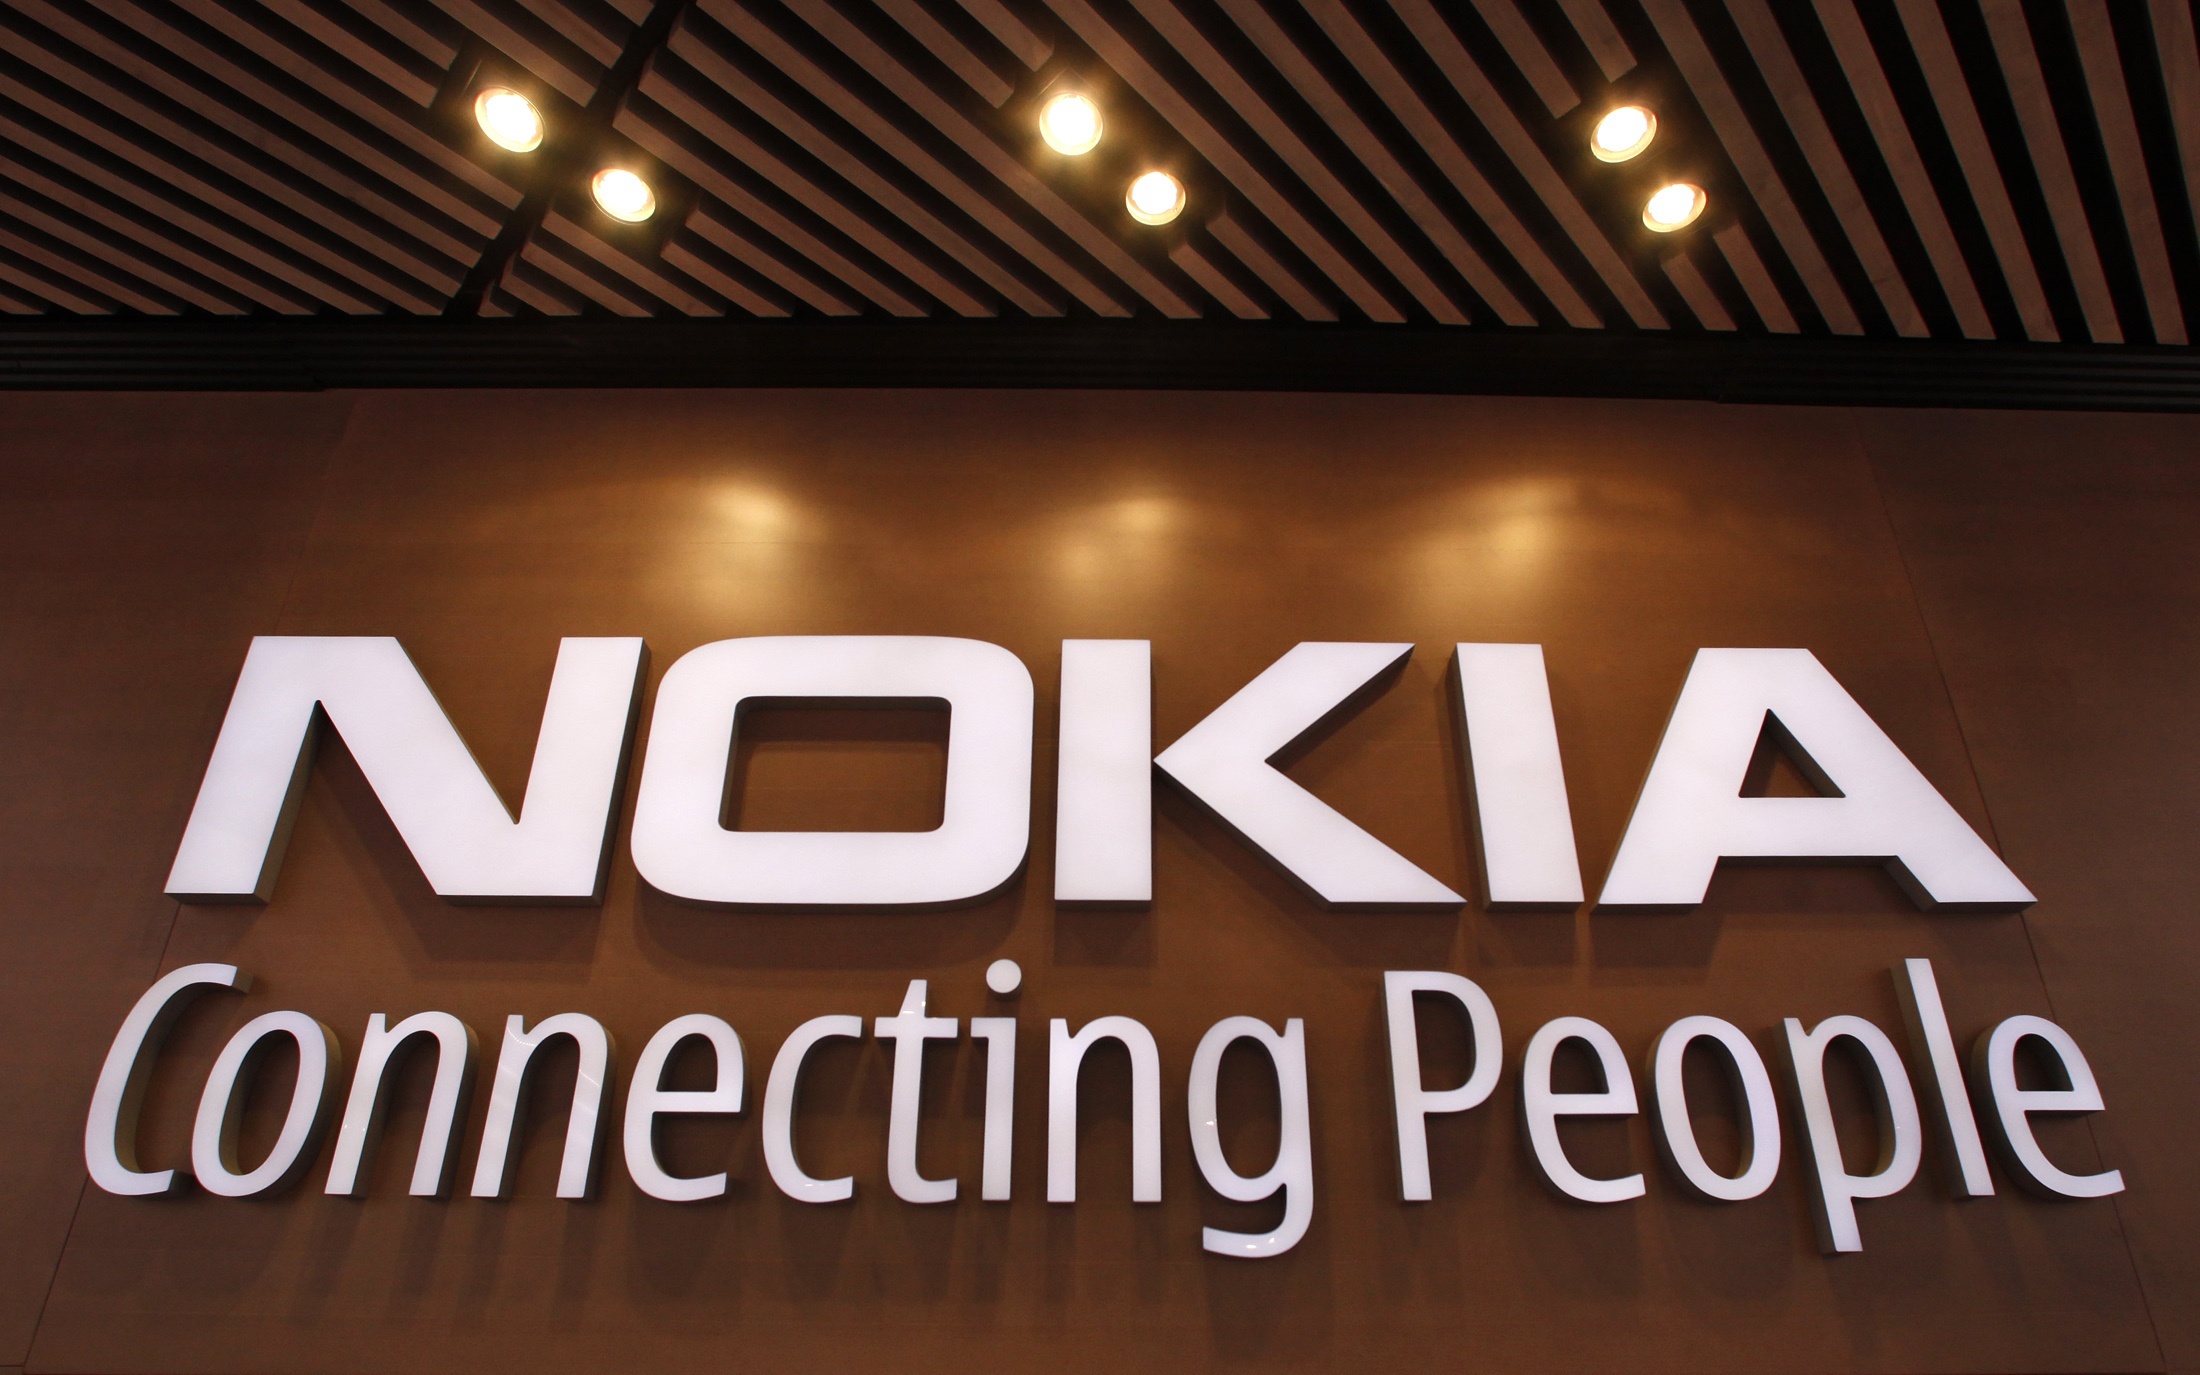 Η Nokia δίνει στους υπαλλήλους τη δυνατότητα για 3 μέρες τηλεργασία την εβδομάδα